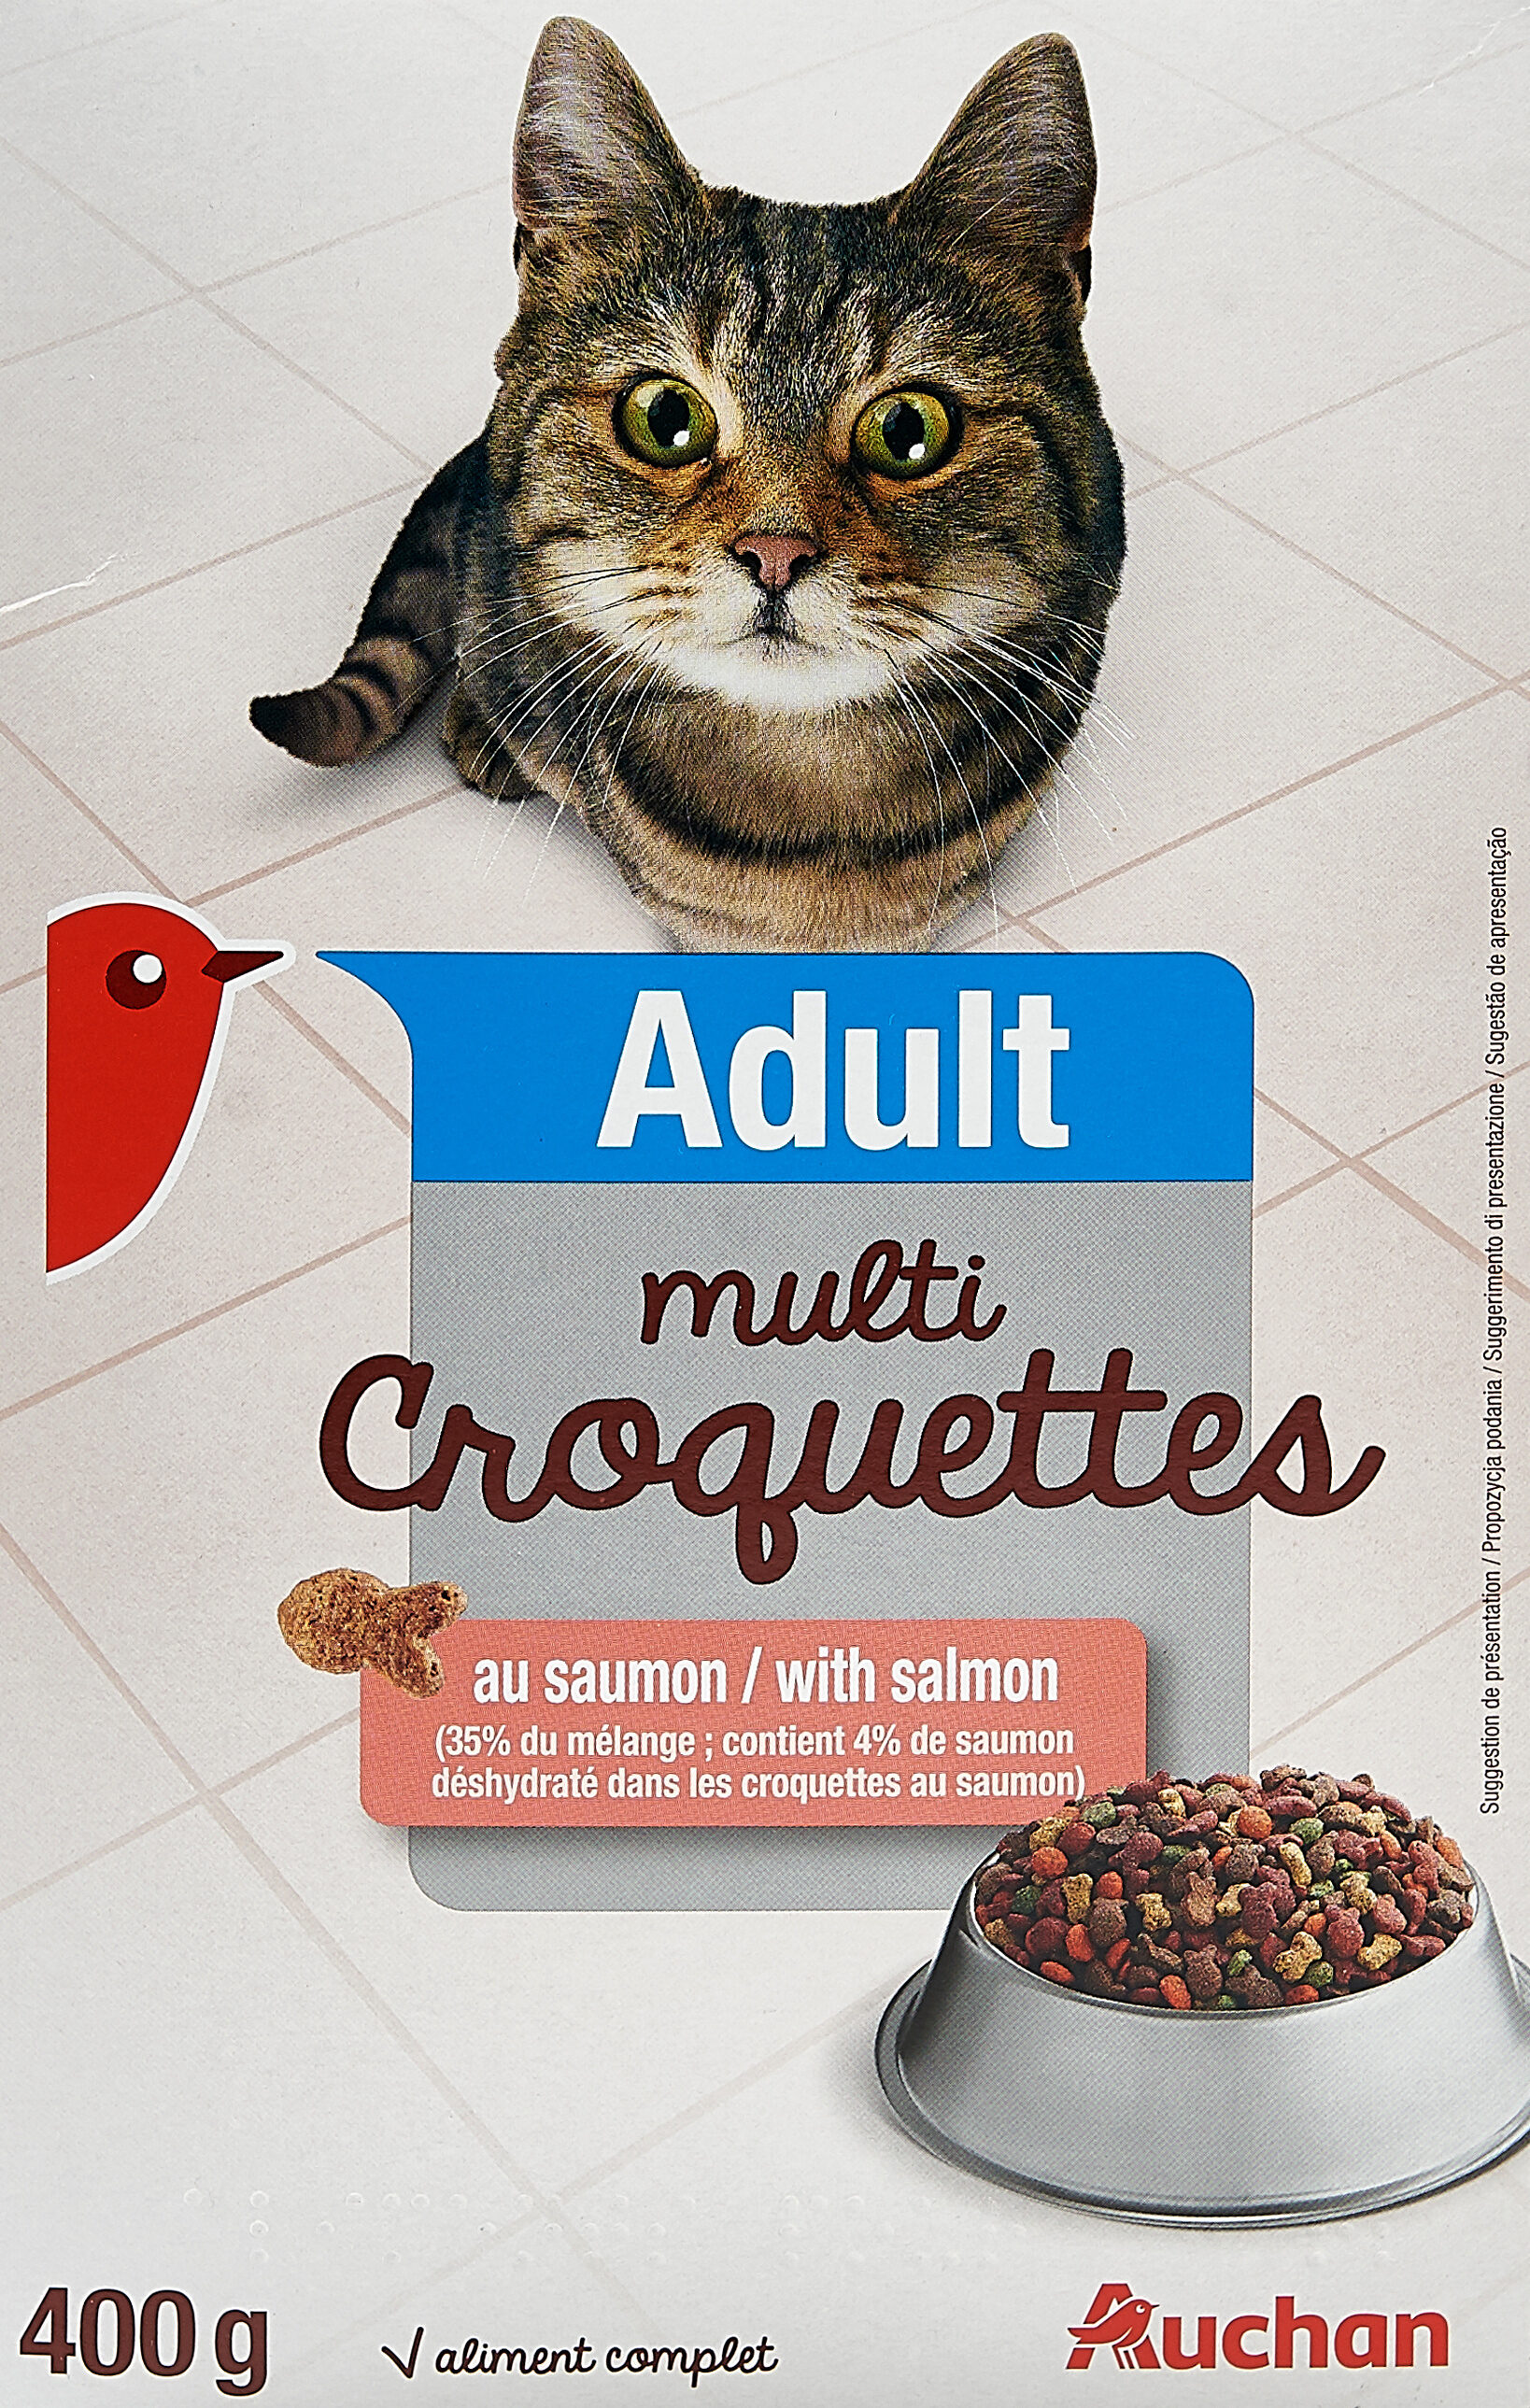 Adult Multi croquettes - Product - en